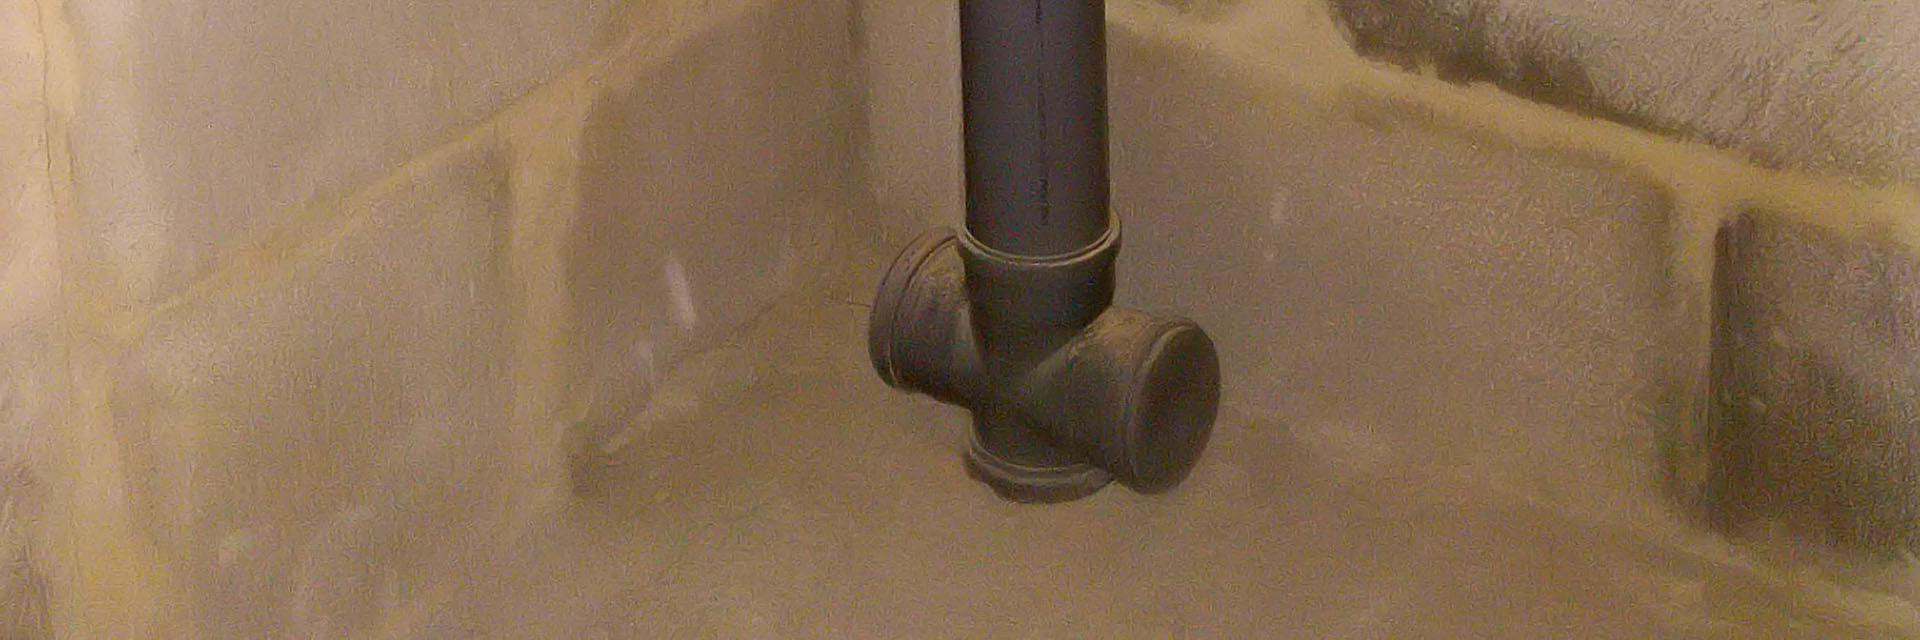 Замена труб в ванной комнате: как не наделать ошибок при ремонте